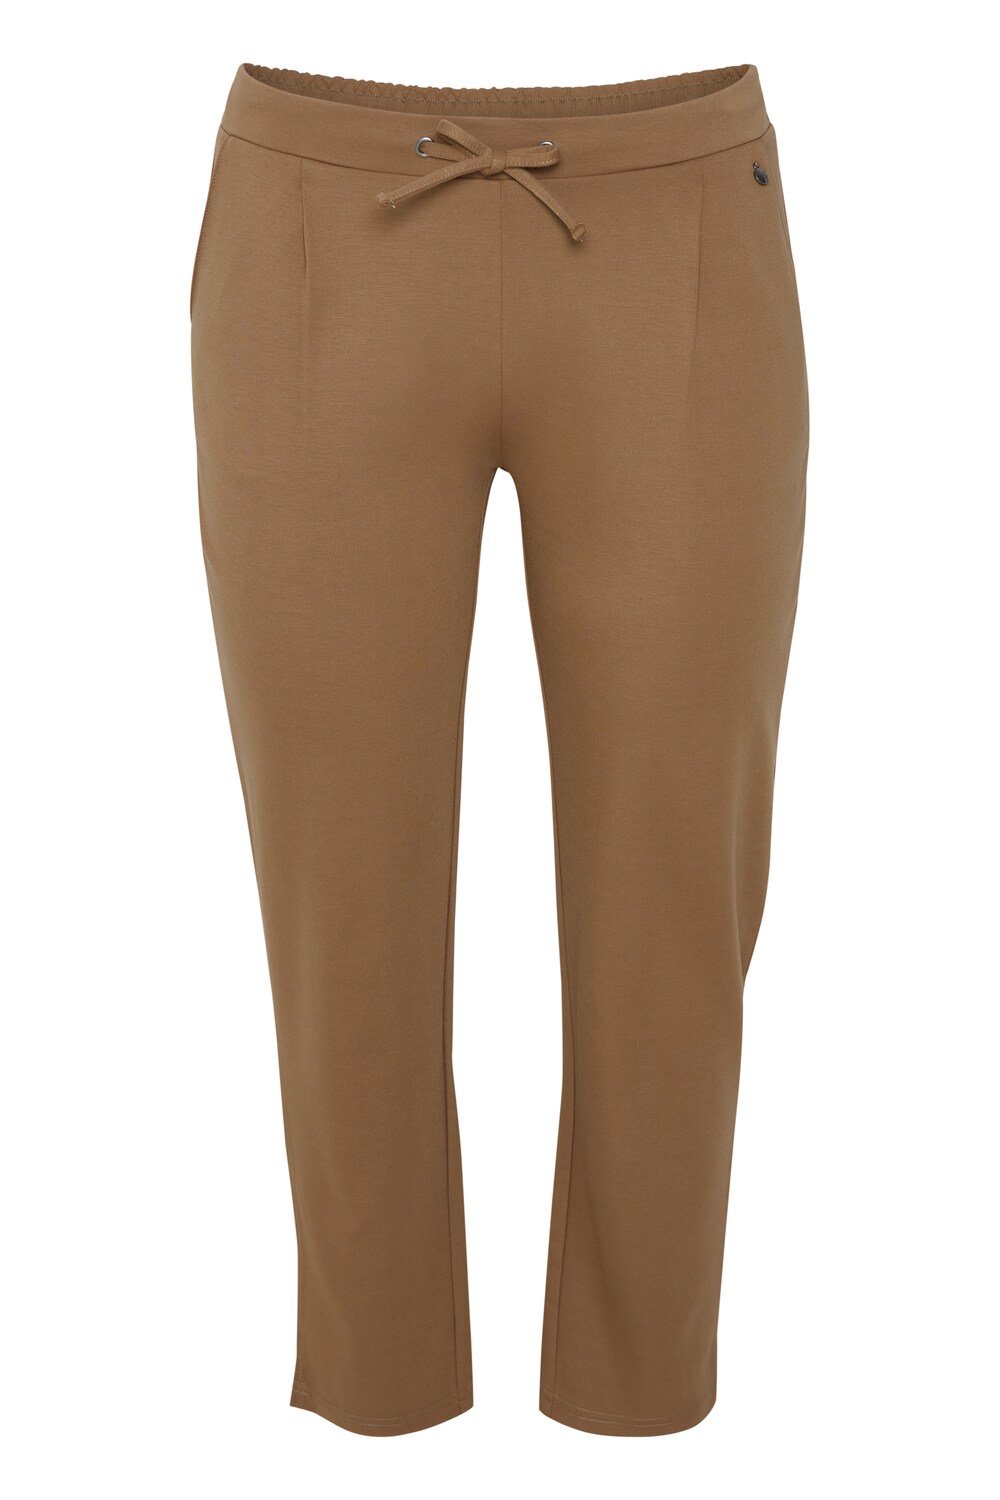 Узкие брюки со складками спереди Fransa Curve STRETCH, коричневый платье fransa frberib 2 коричневый